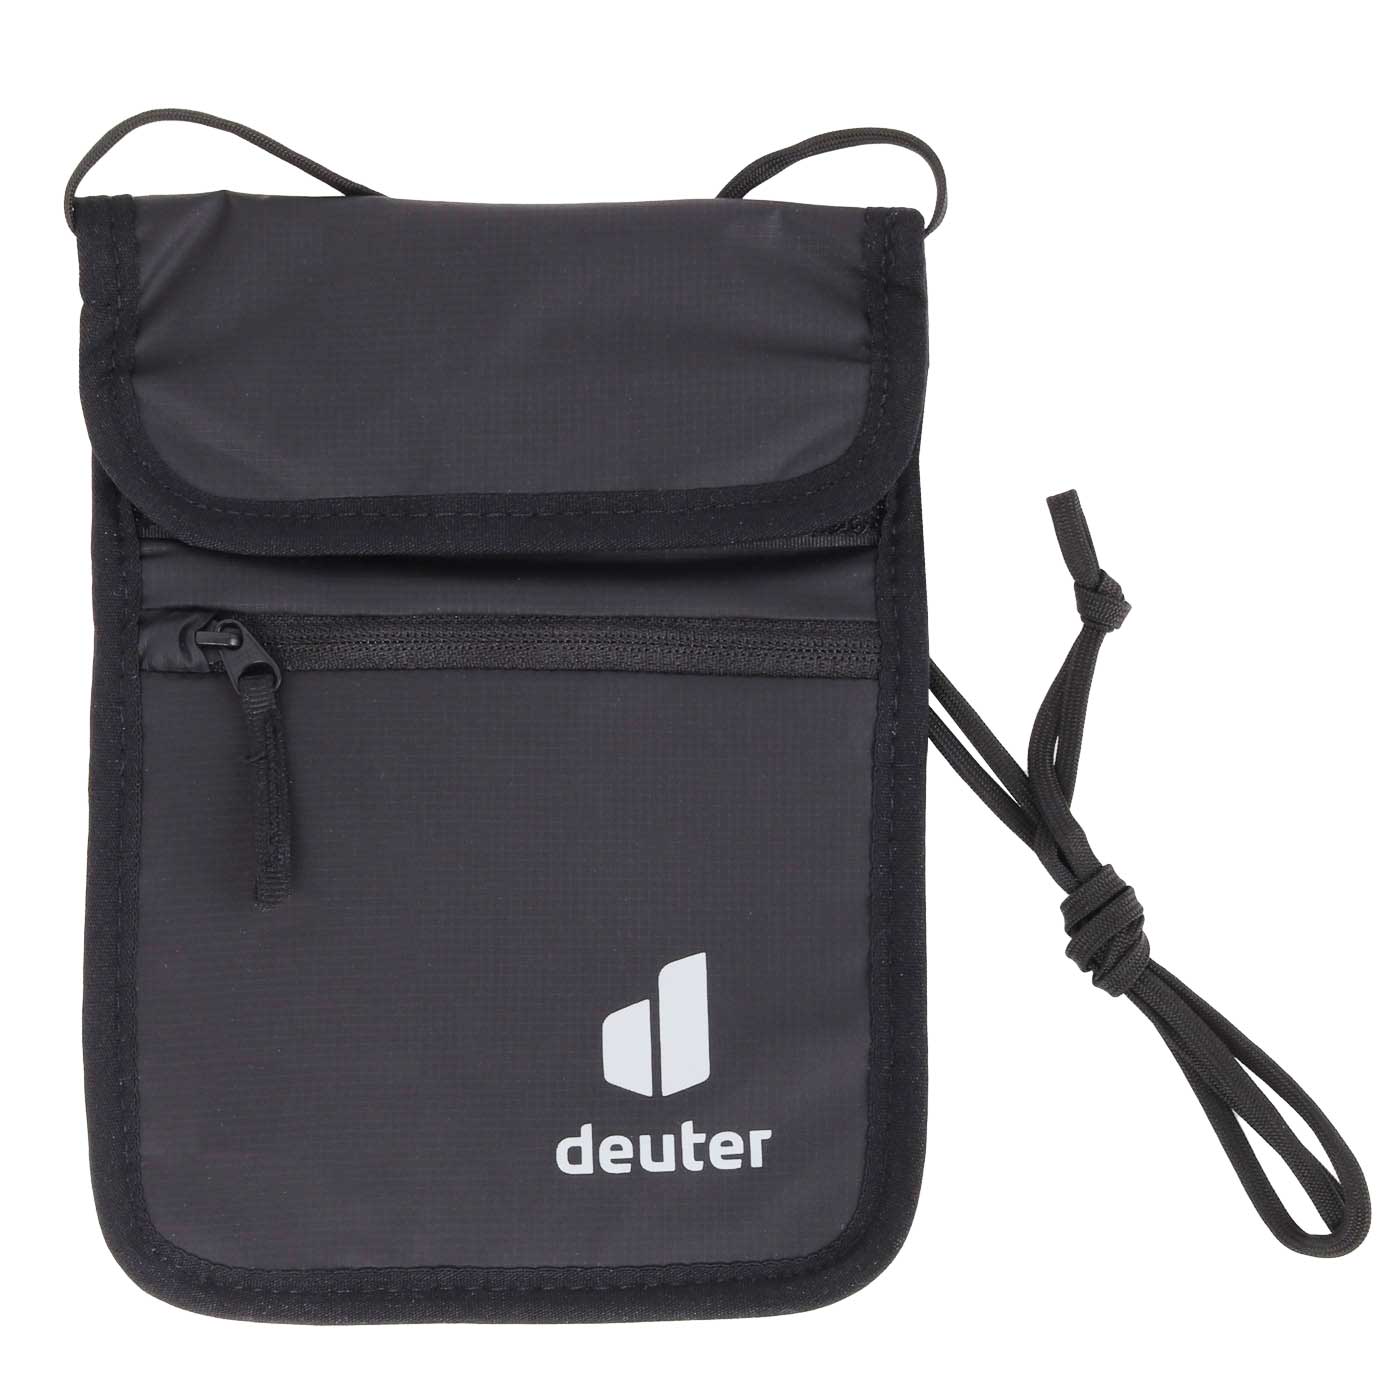 Produktbild von Deuter Security Wallet II Brustbeutel - black